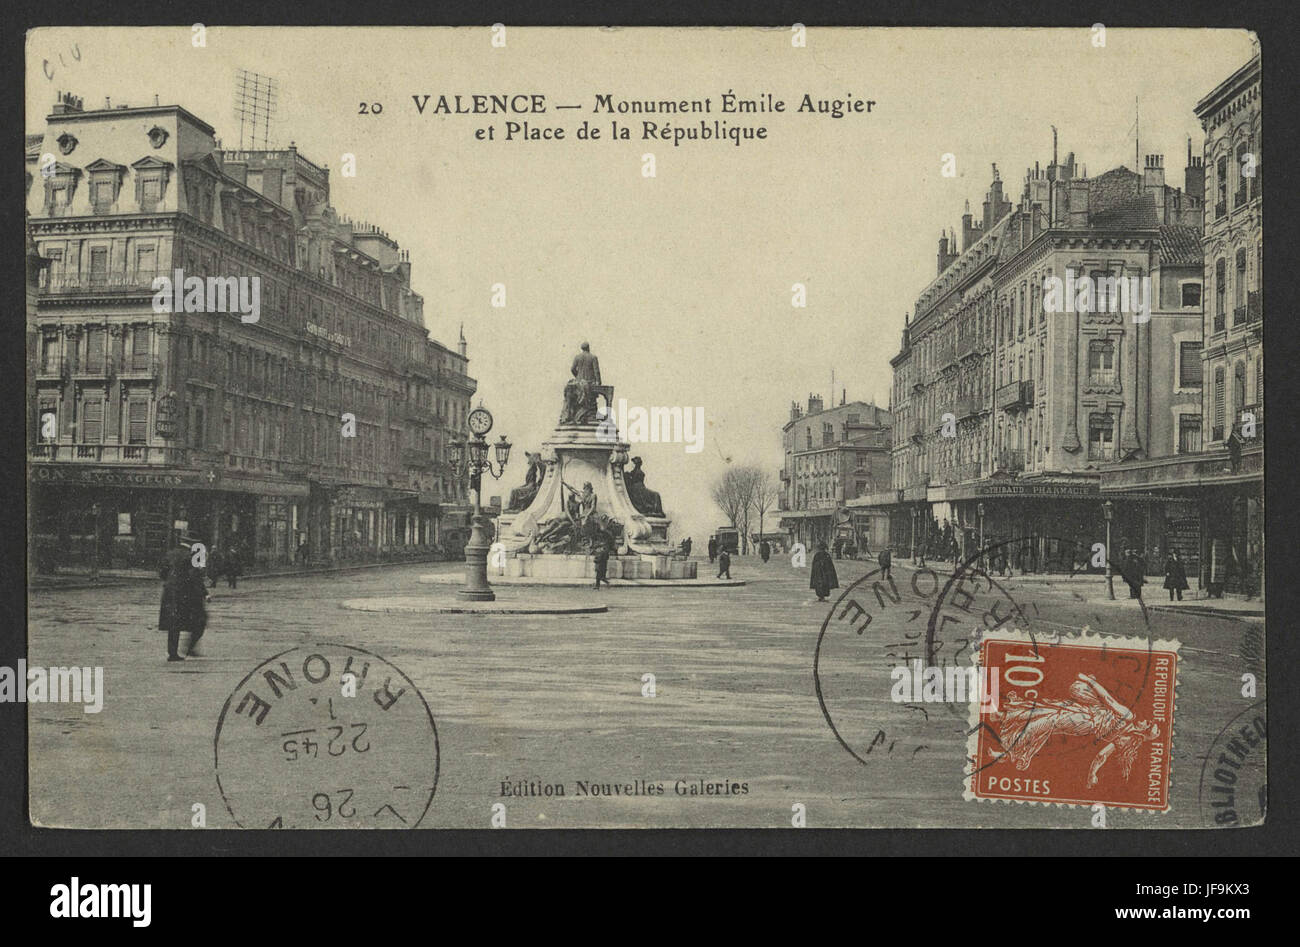 Valence - Monument Émile Augier et Place de la République 34184582300 o Stock Photo